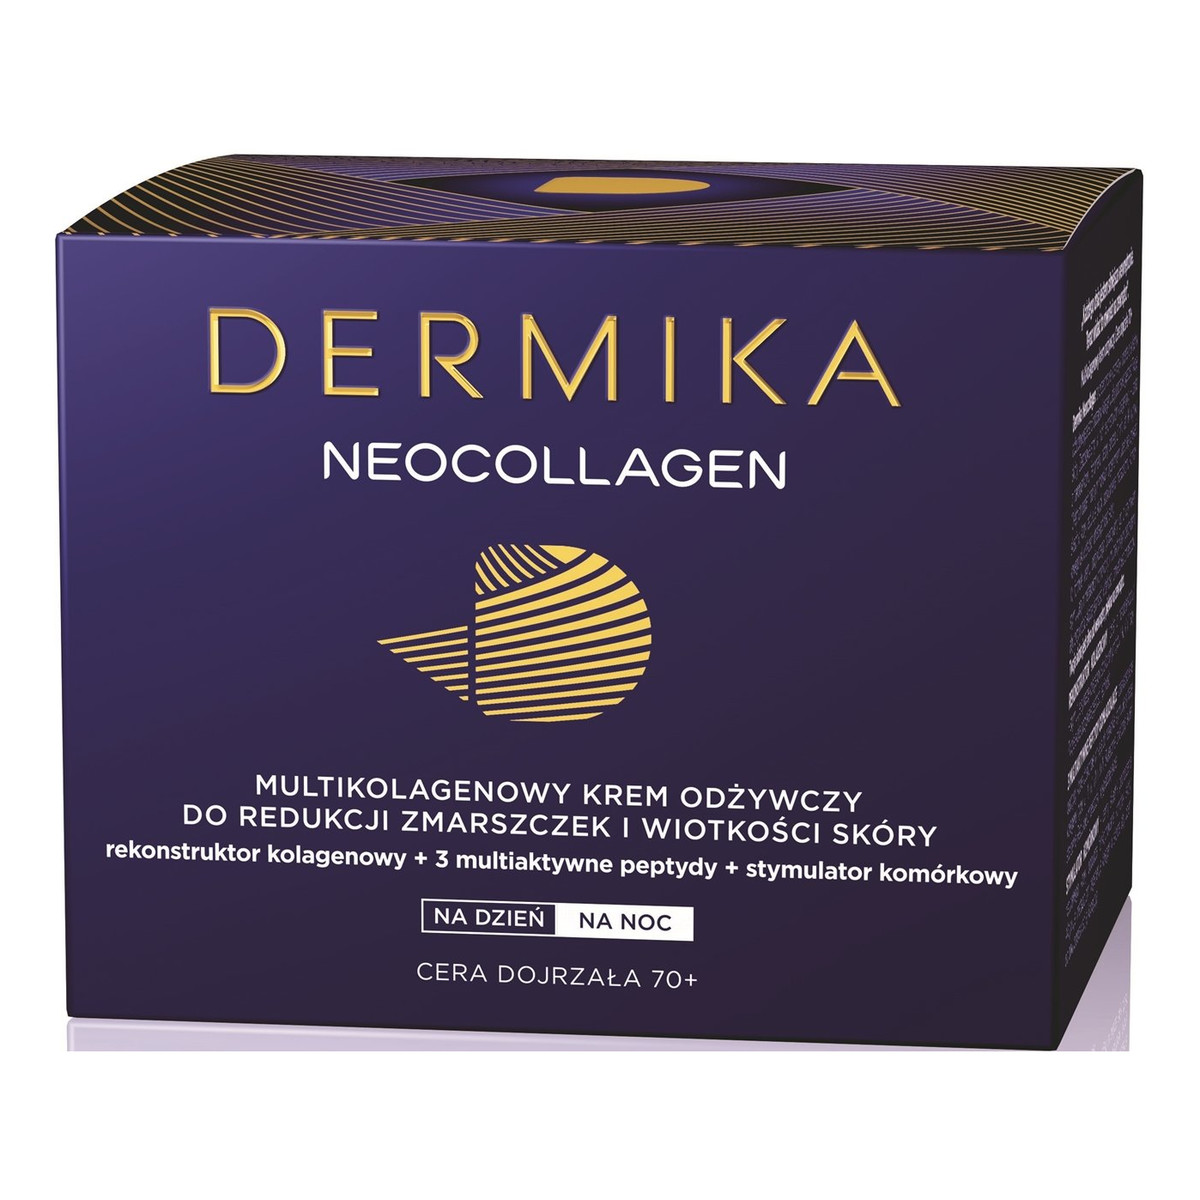 Dermika Neocollagen 70+ Multikolagenowy Krem Odżywczy Redukujący Zmarszczki i Wiotkość Skóry Na Dzień i Na Noc 50ml